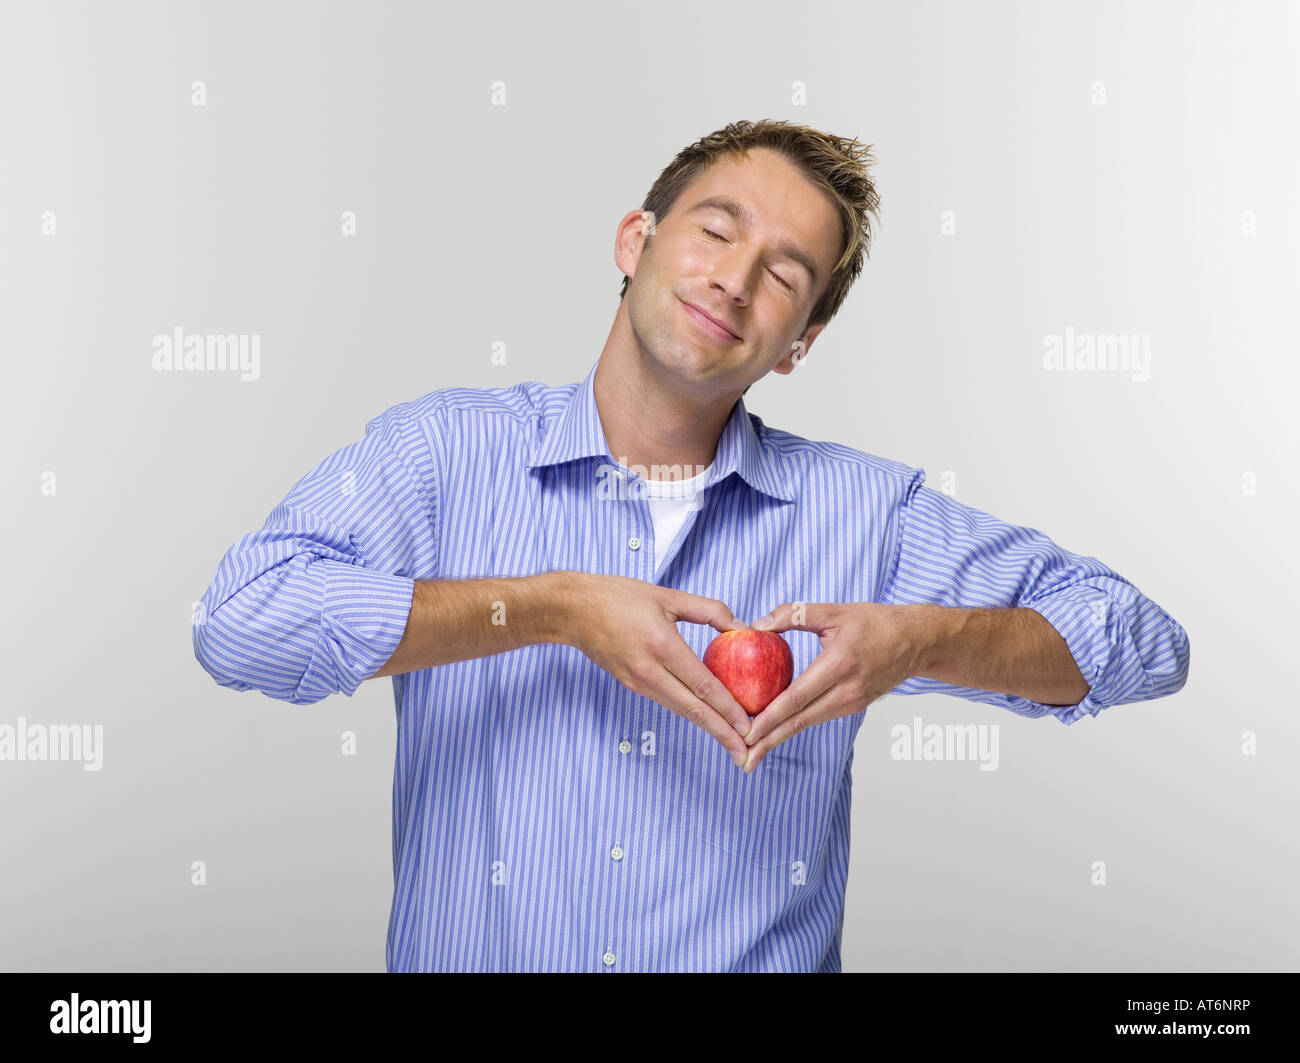 Young man holding apple, portrait Banque D'Images